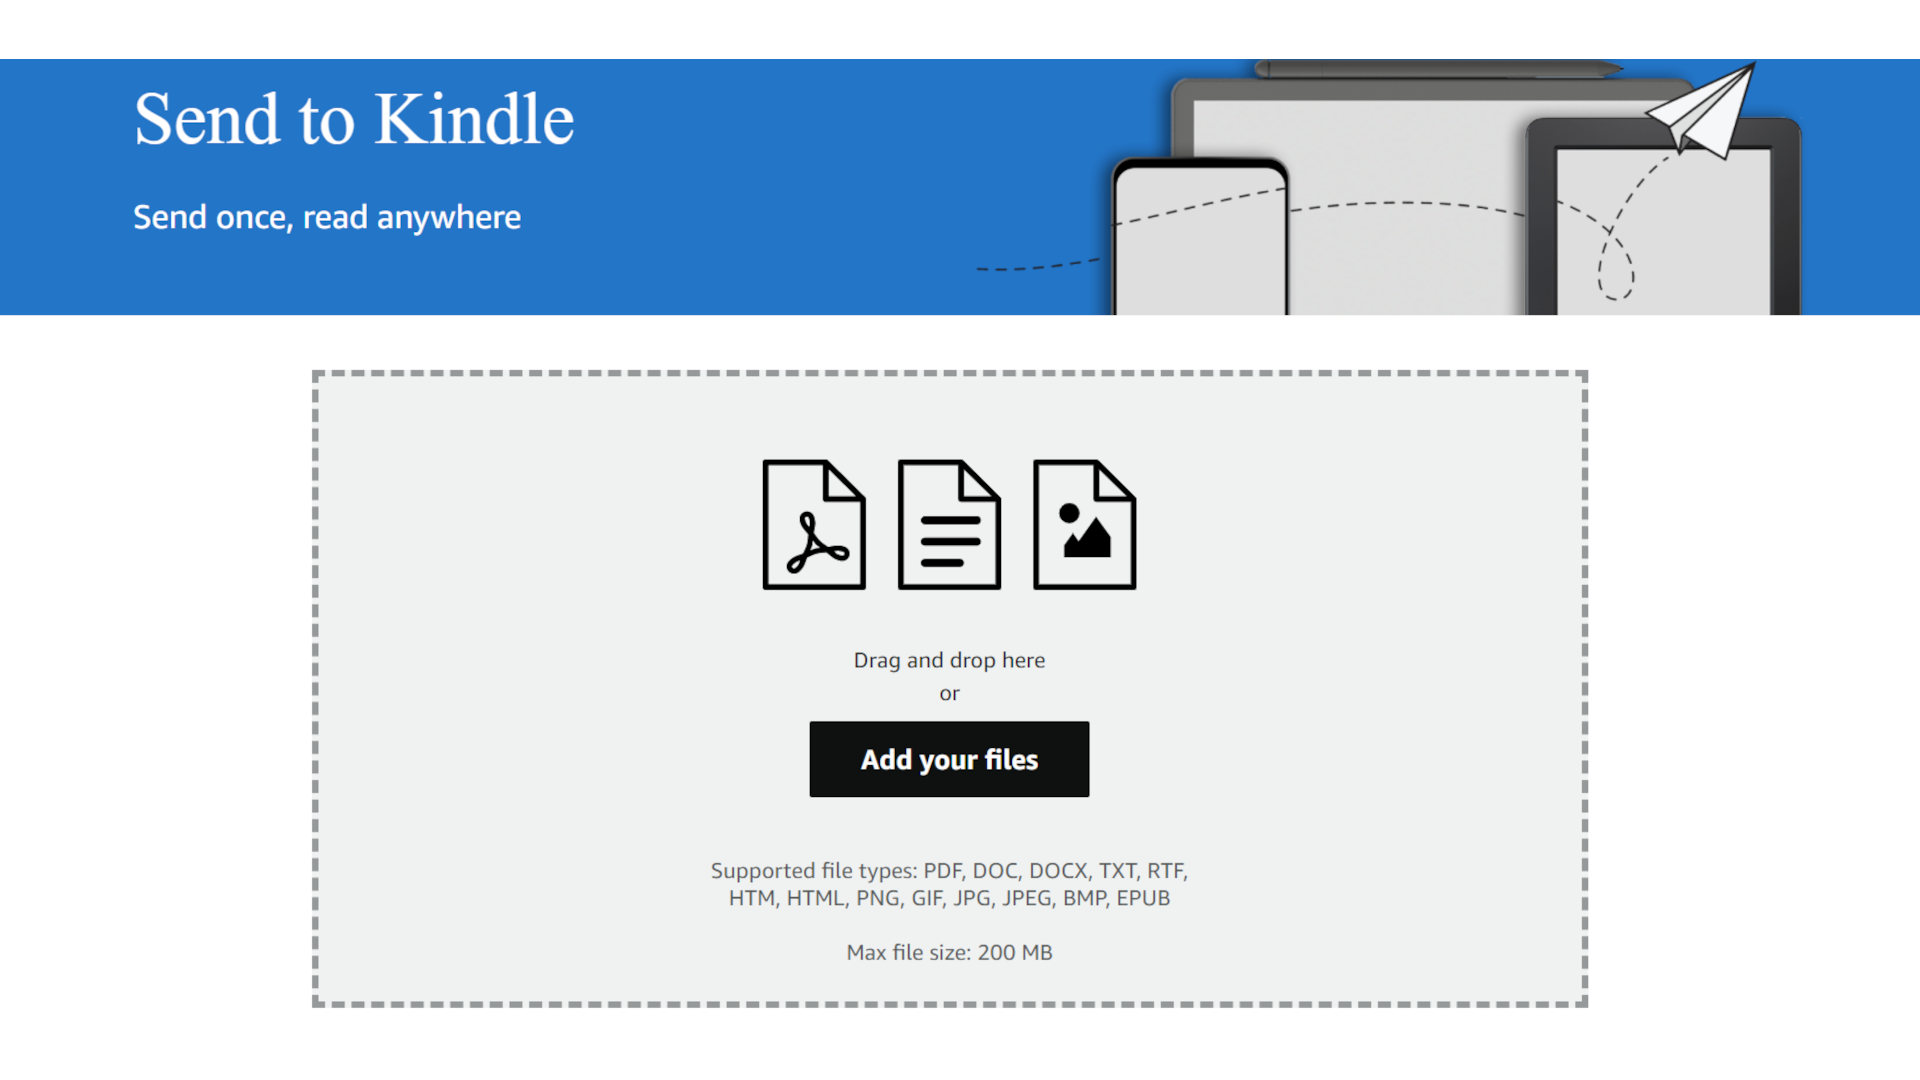 un'immagine mostra la pagina Invia a Kindle.